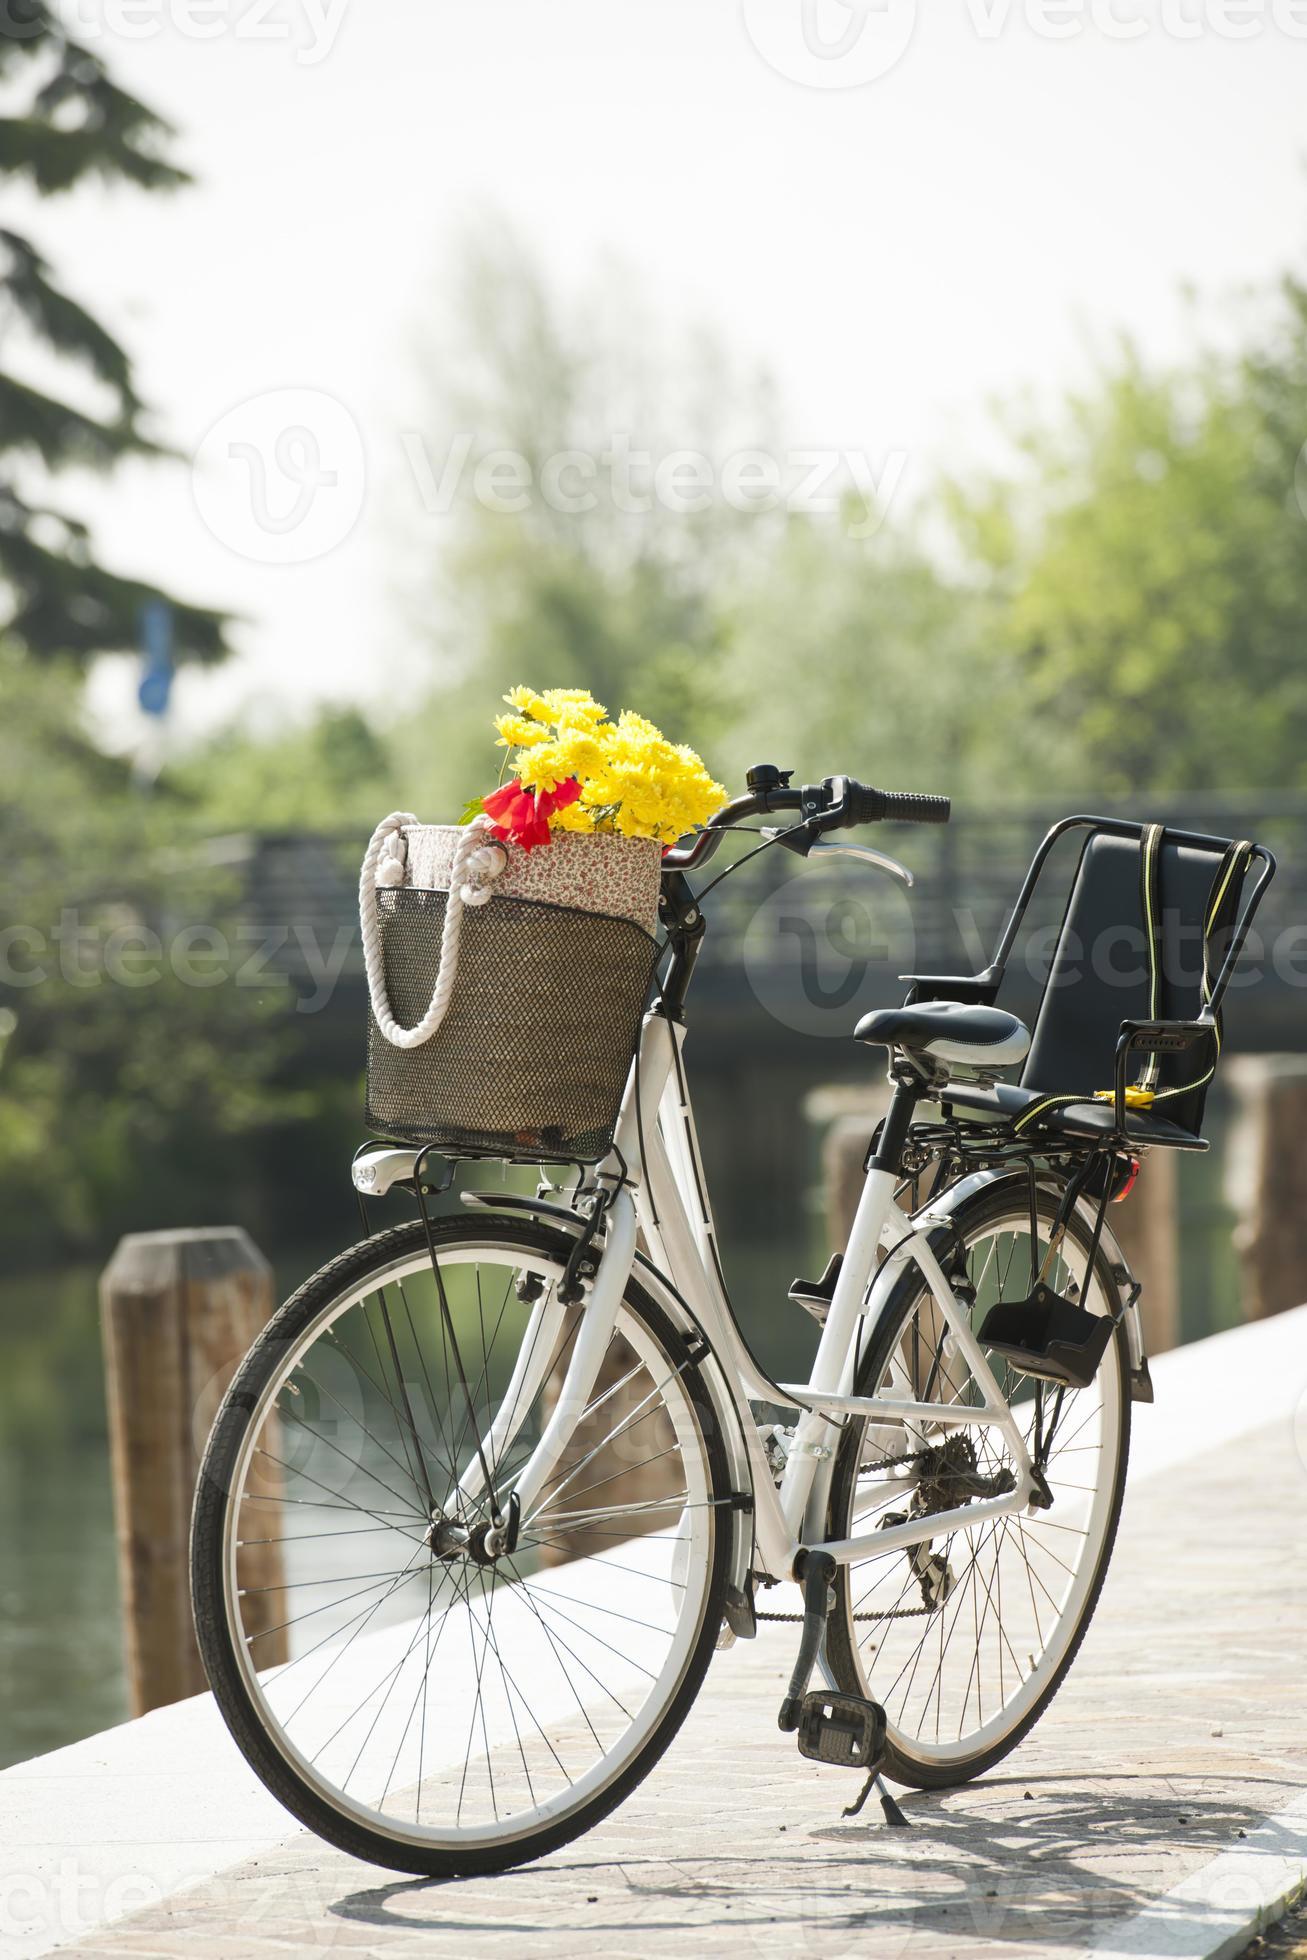 Verdampen metriek Uitwerpselen fiets met mand en bloemen 746534 stockfoto bij Vecteezy